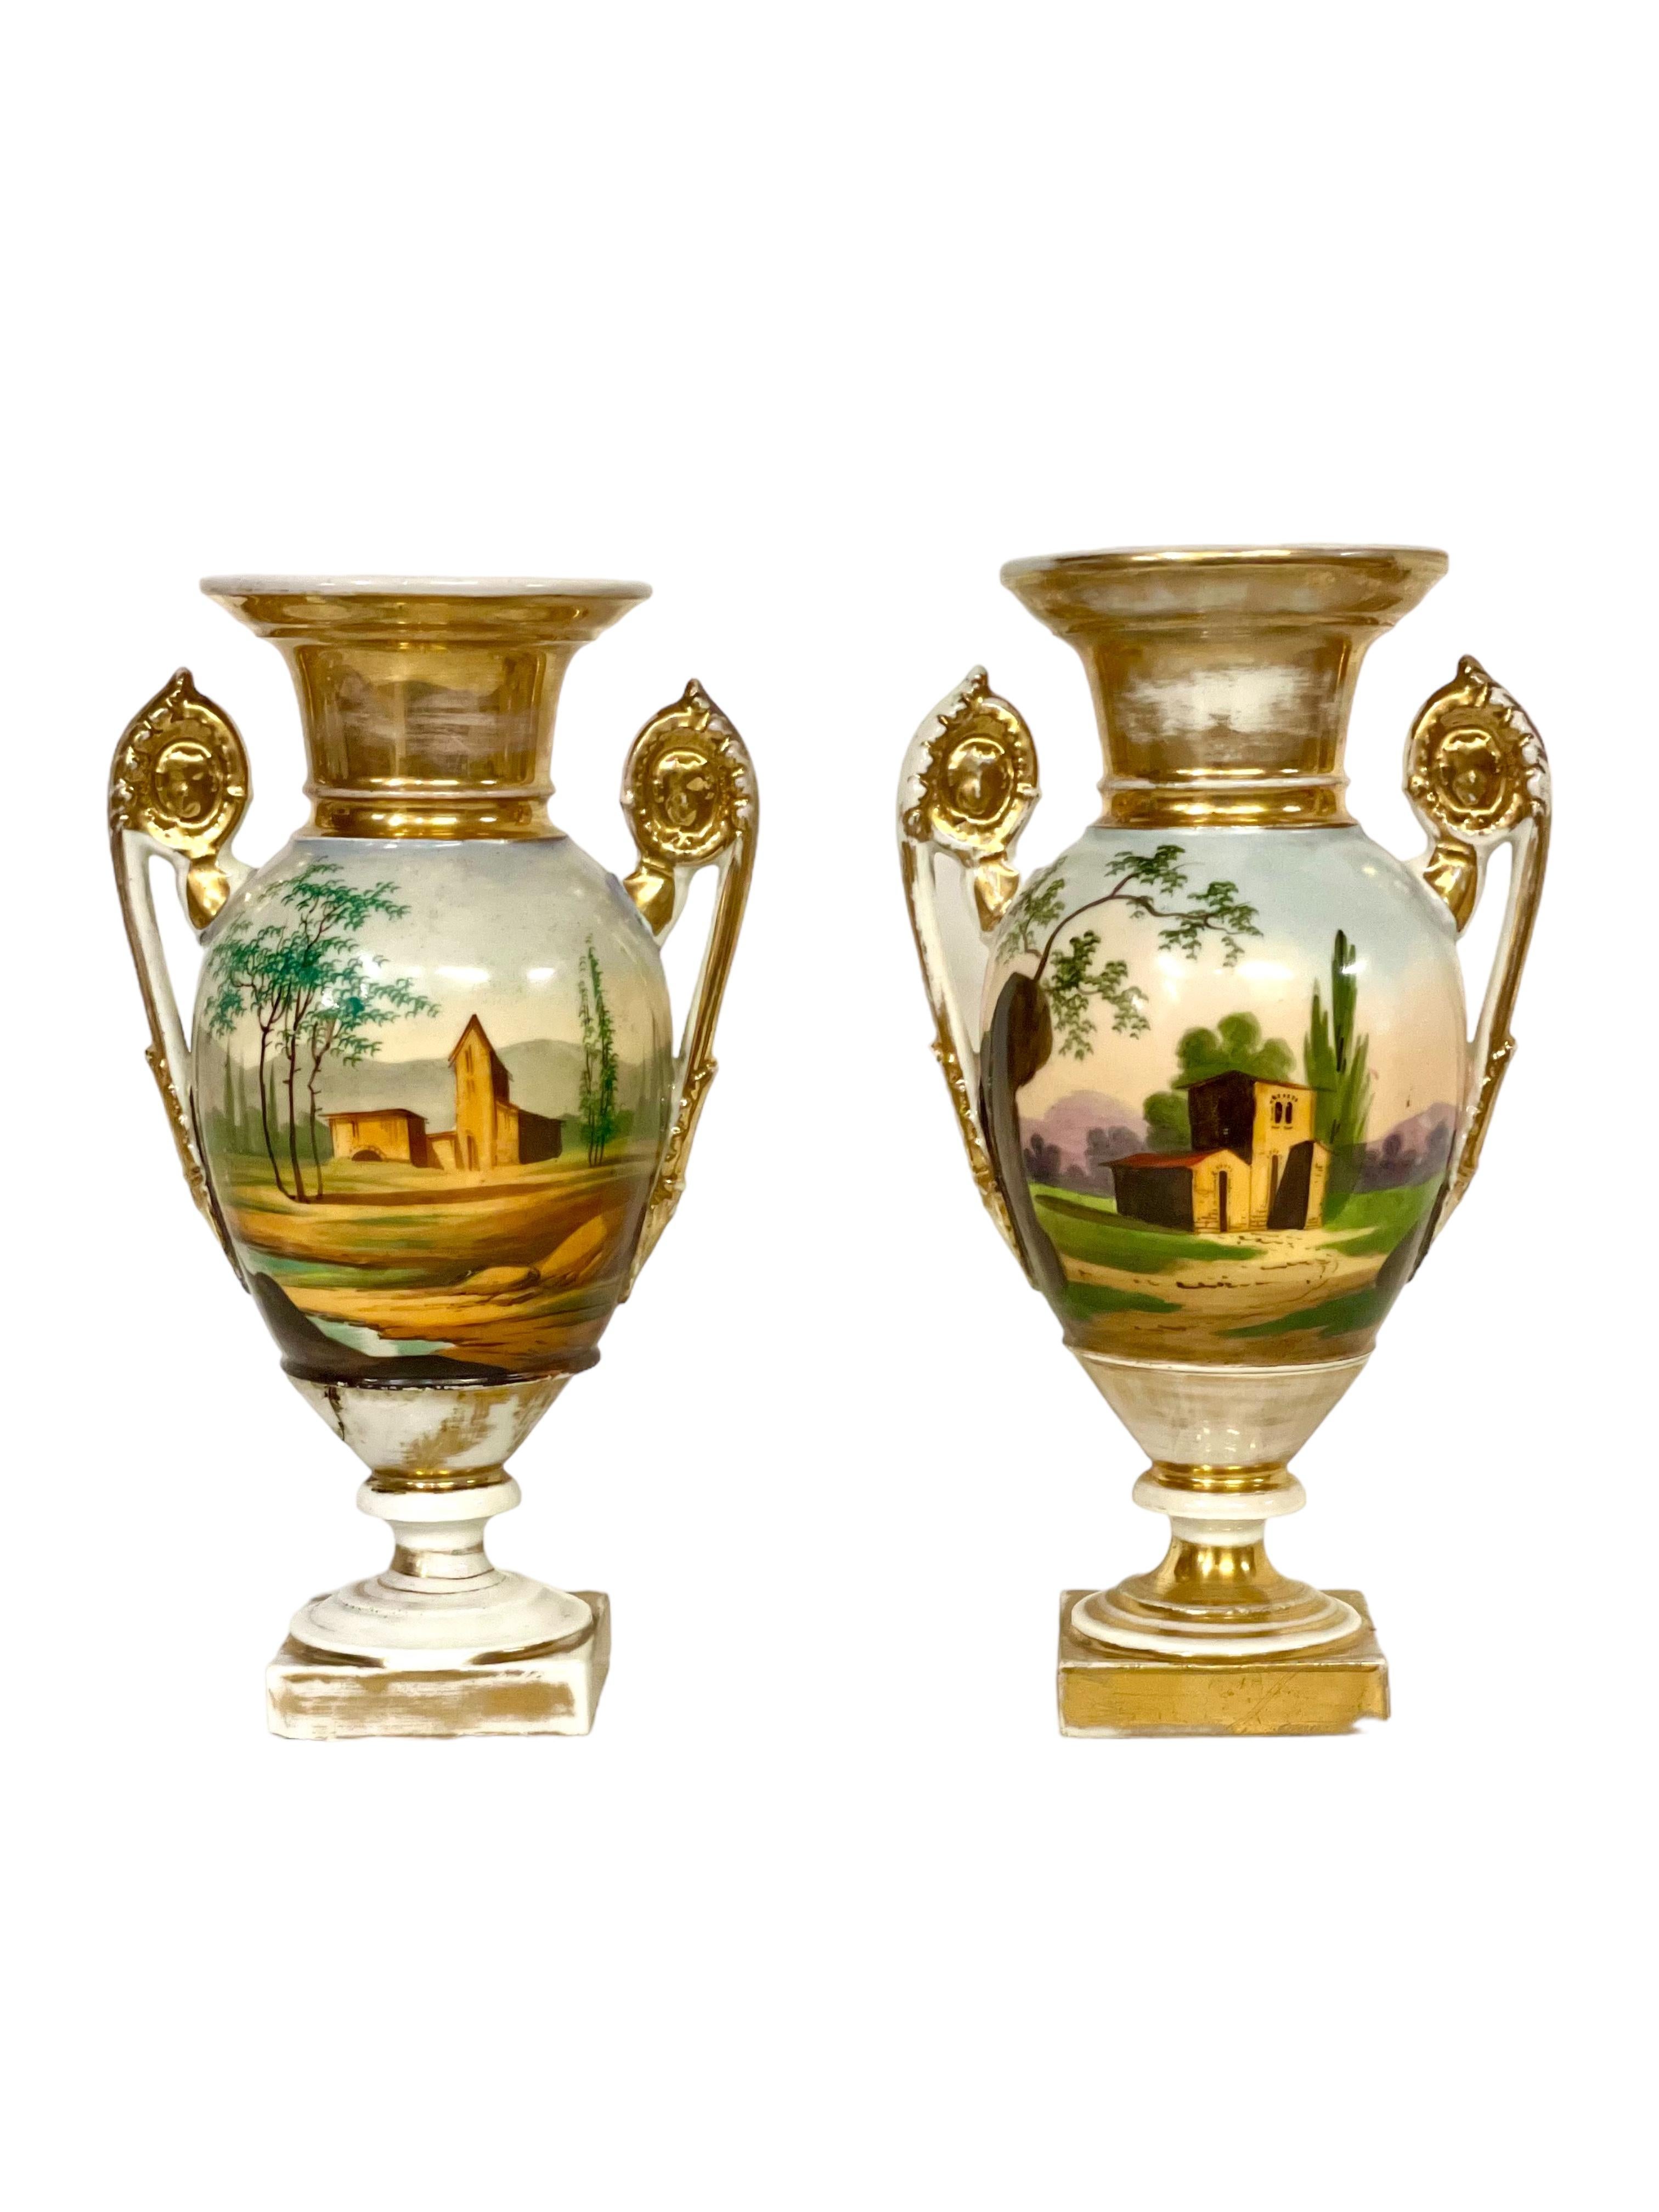 Ein schönes Paar antiker französischer Urnen aus 